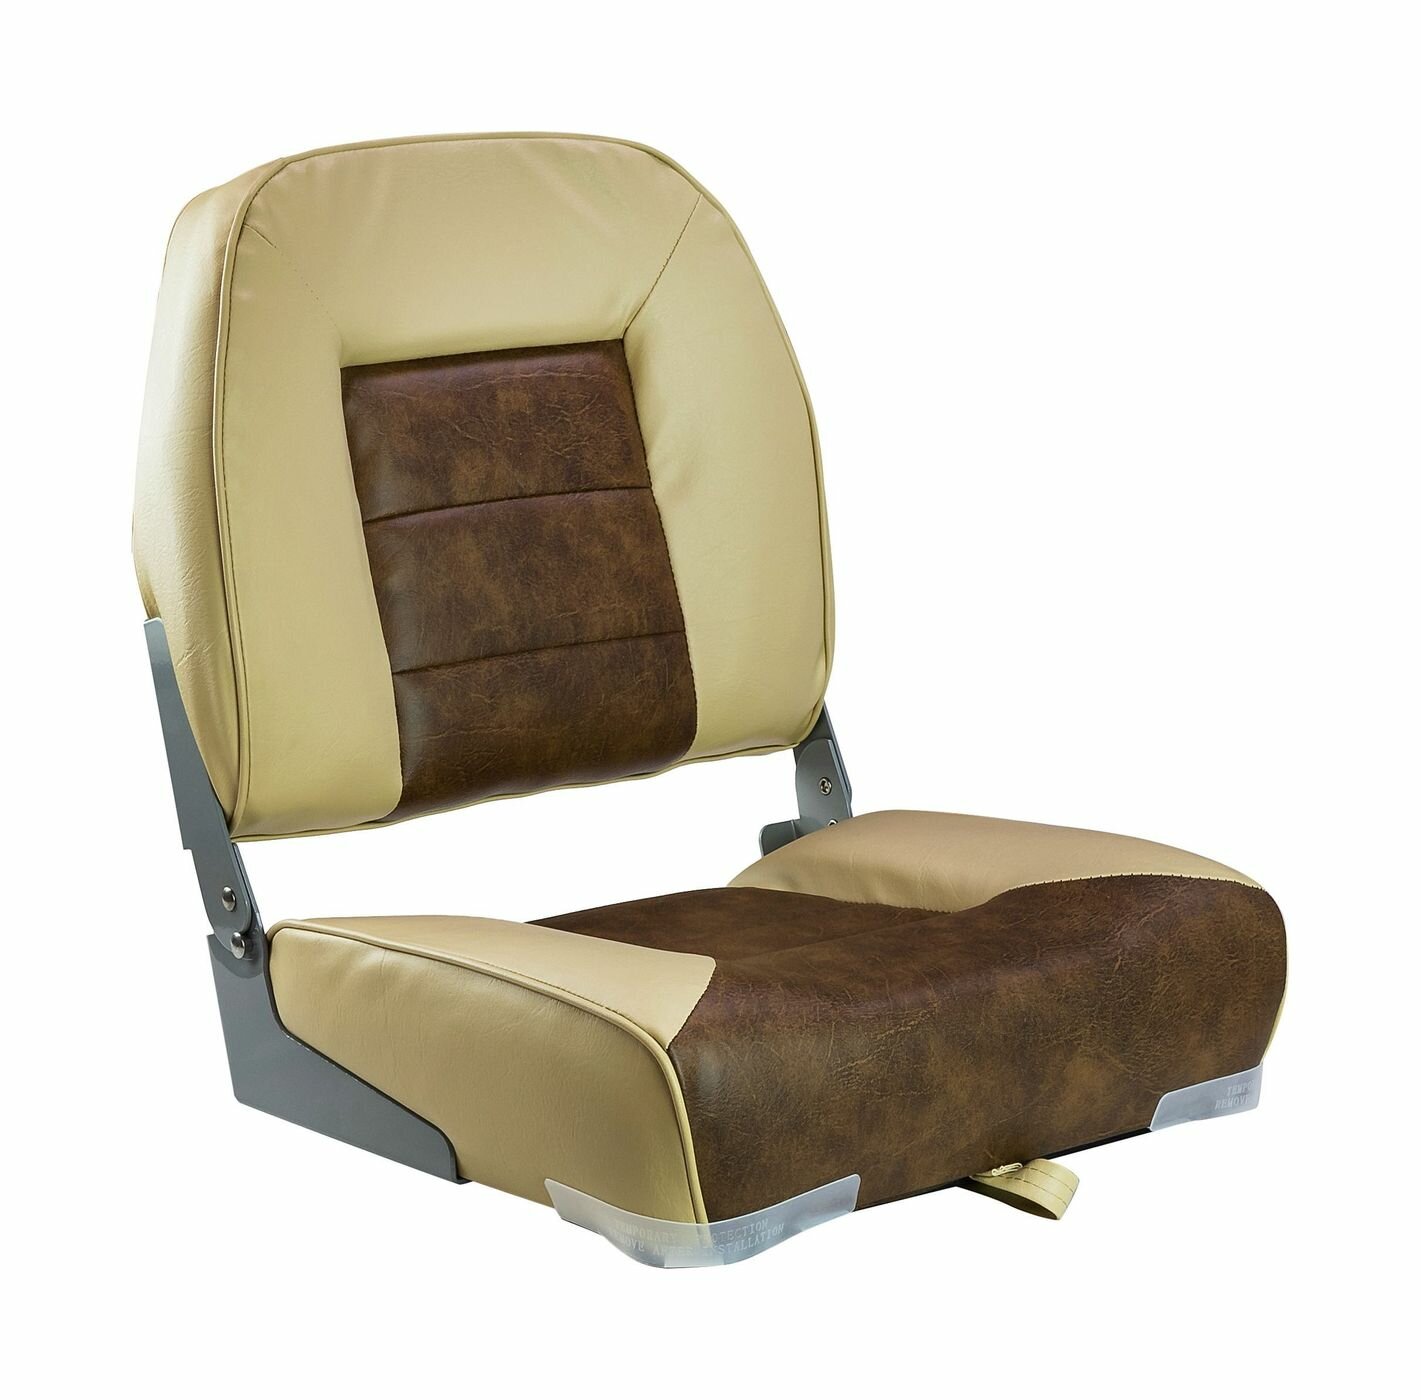 Кресло складное мягкое, обивка винил, цвет песочный/коричневый, Marine Rocket 75121SB-MR - фотография № 1